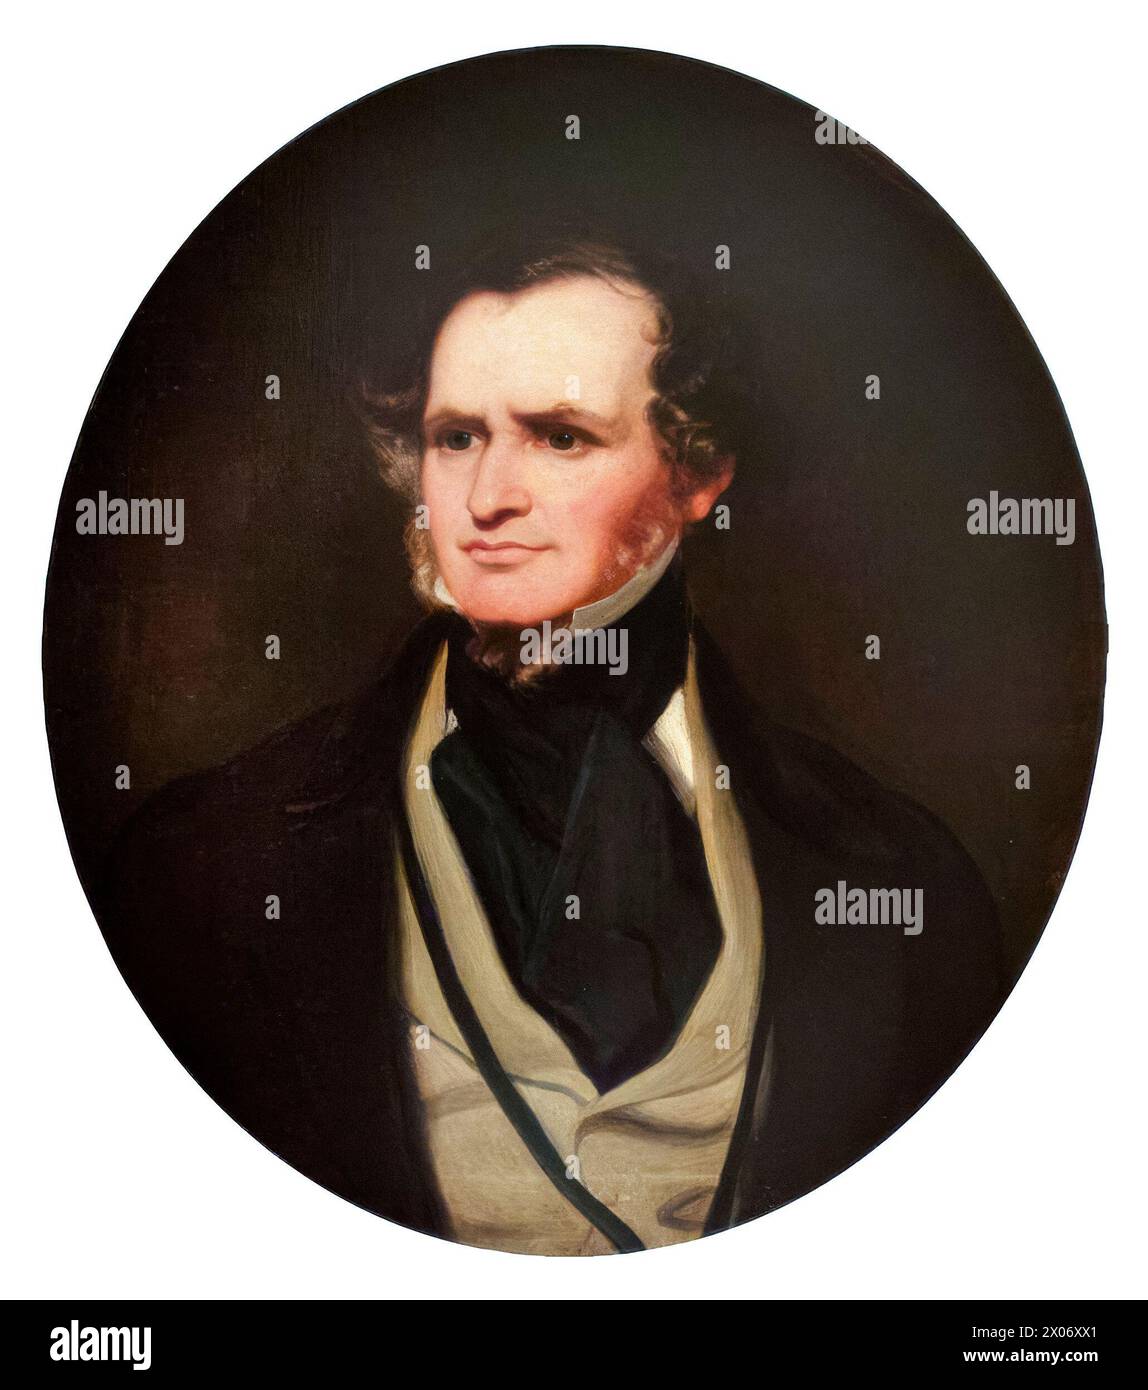 Edward Smith-Stanley, XIV conte di Derby (1799-1869), noto come "Lord Stanley", servì tre volte come primo ministro del Regno Unito nel 1852, 1858-1859, e 1866-1868, ritratti ad olio su tela di Sir Francis Grant, intorno al 1850 Foto Stock